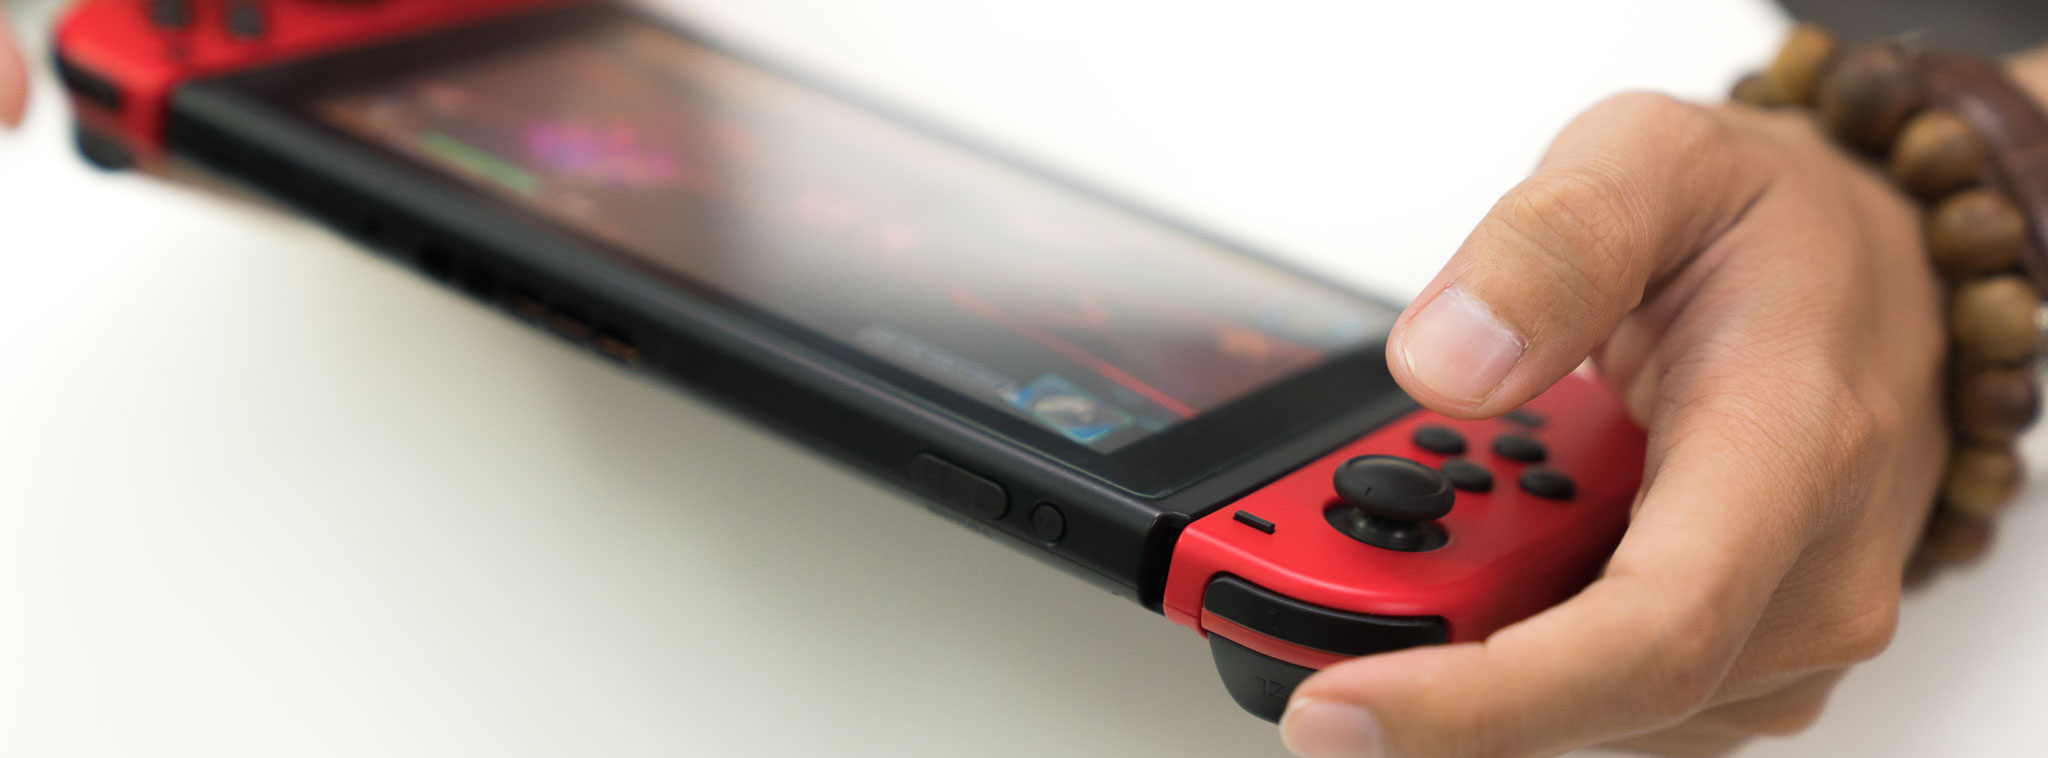 Trên tay Nintendo Switch phiên bản Mario Odyssey: Joy Con đỏ, tặng bao đỏ, tặng game